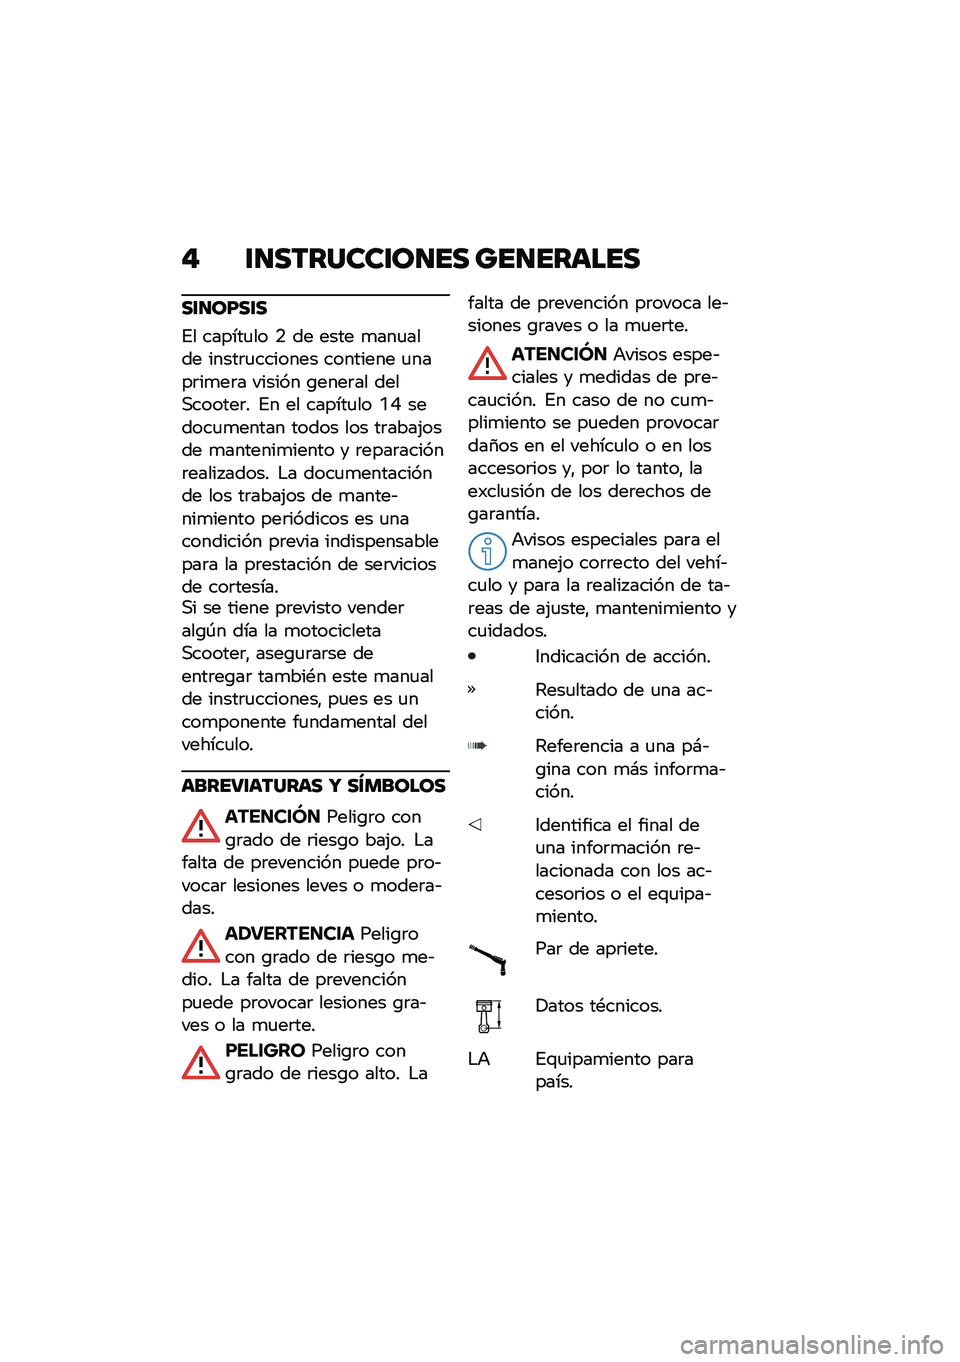 BMW MOTORRAD C 400 GT 2021  Manual de instrucciones (in Spanish) � �\f�
�������\f��
�� ���
������
��\f�
��F��\f�
�%� ������
�� �. �� ���� �
���
���� �����	�
������� �������� �
����	��
��	� �����